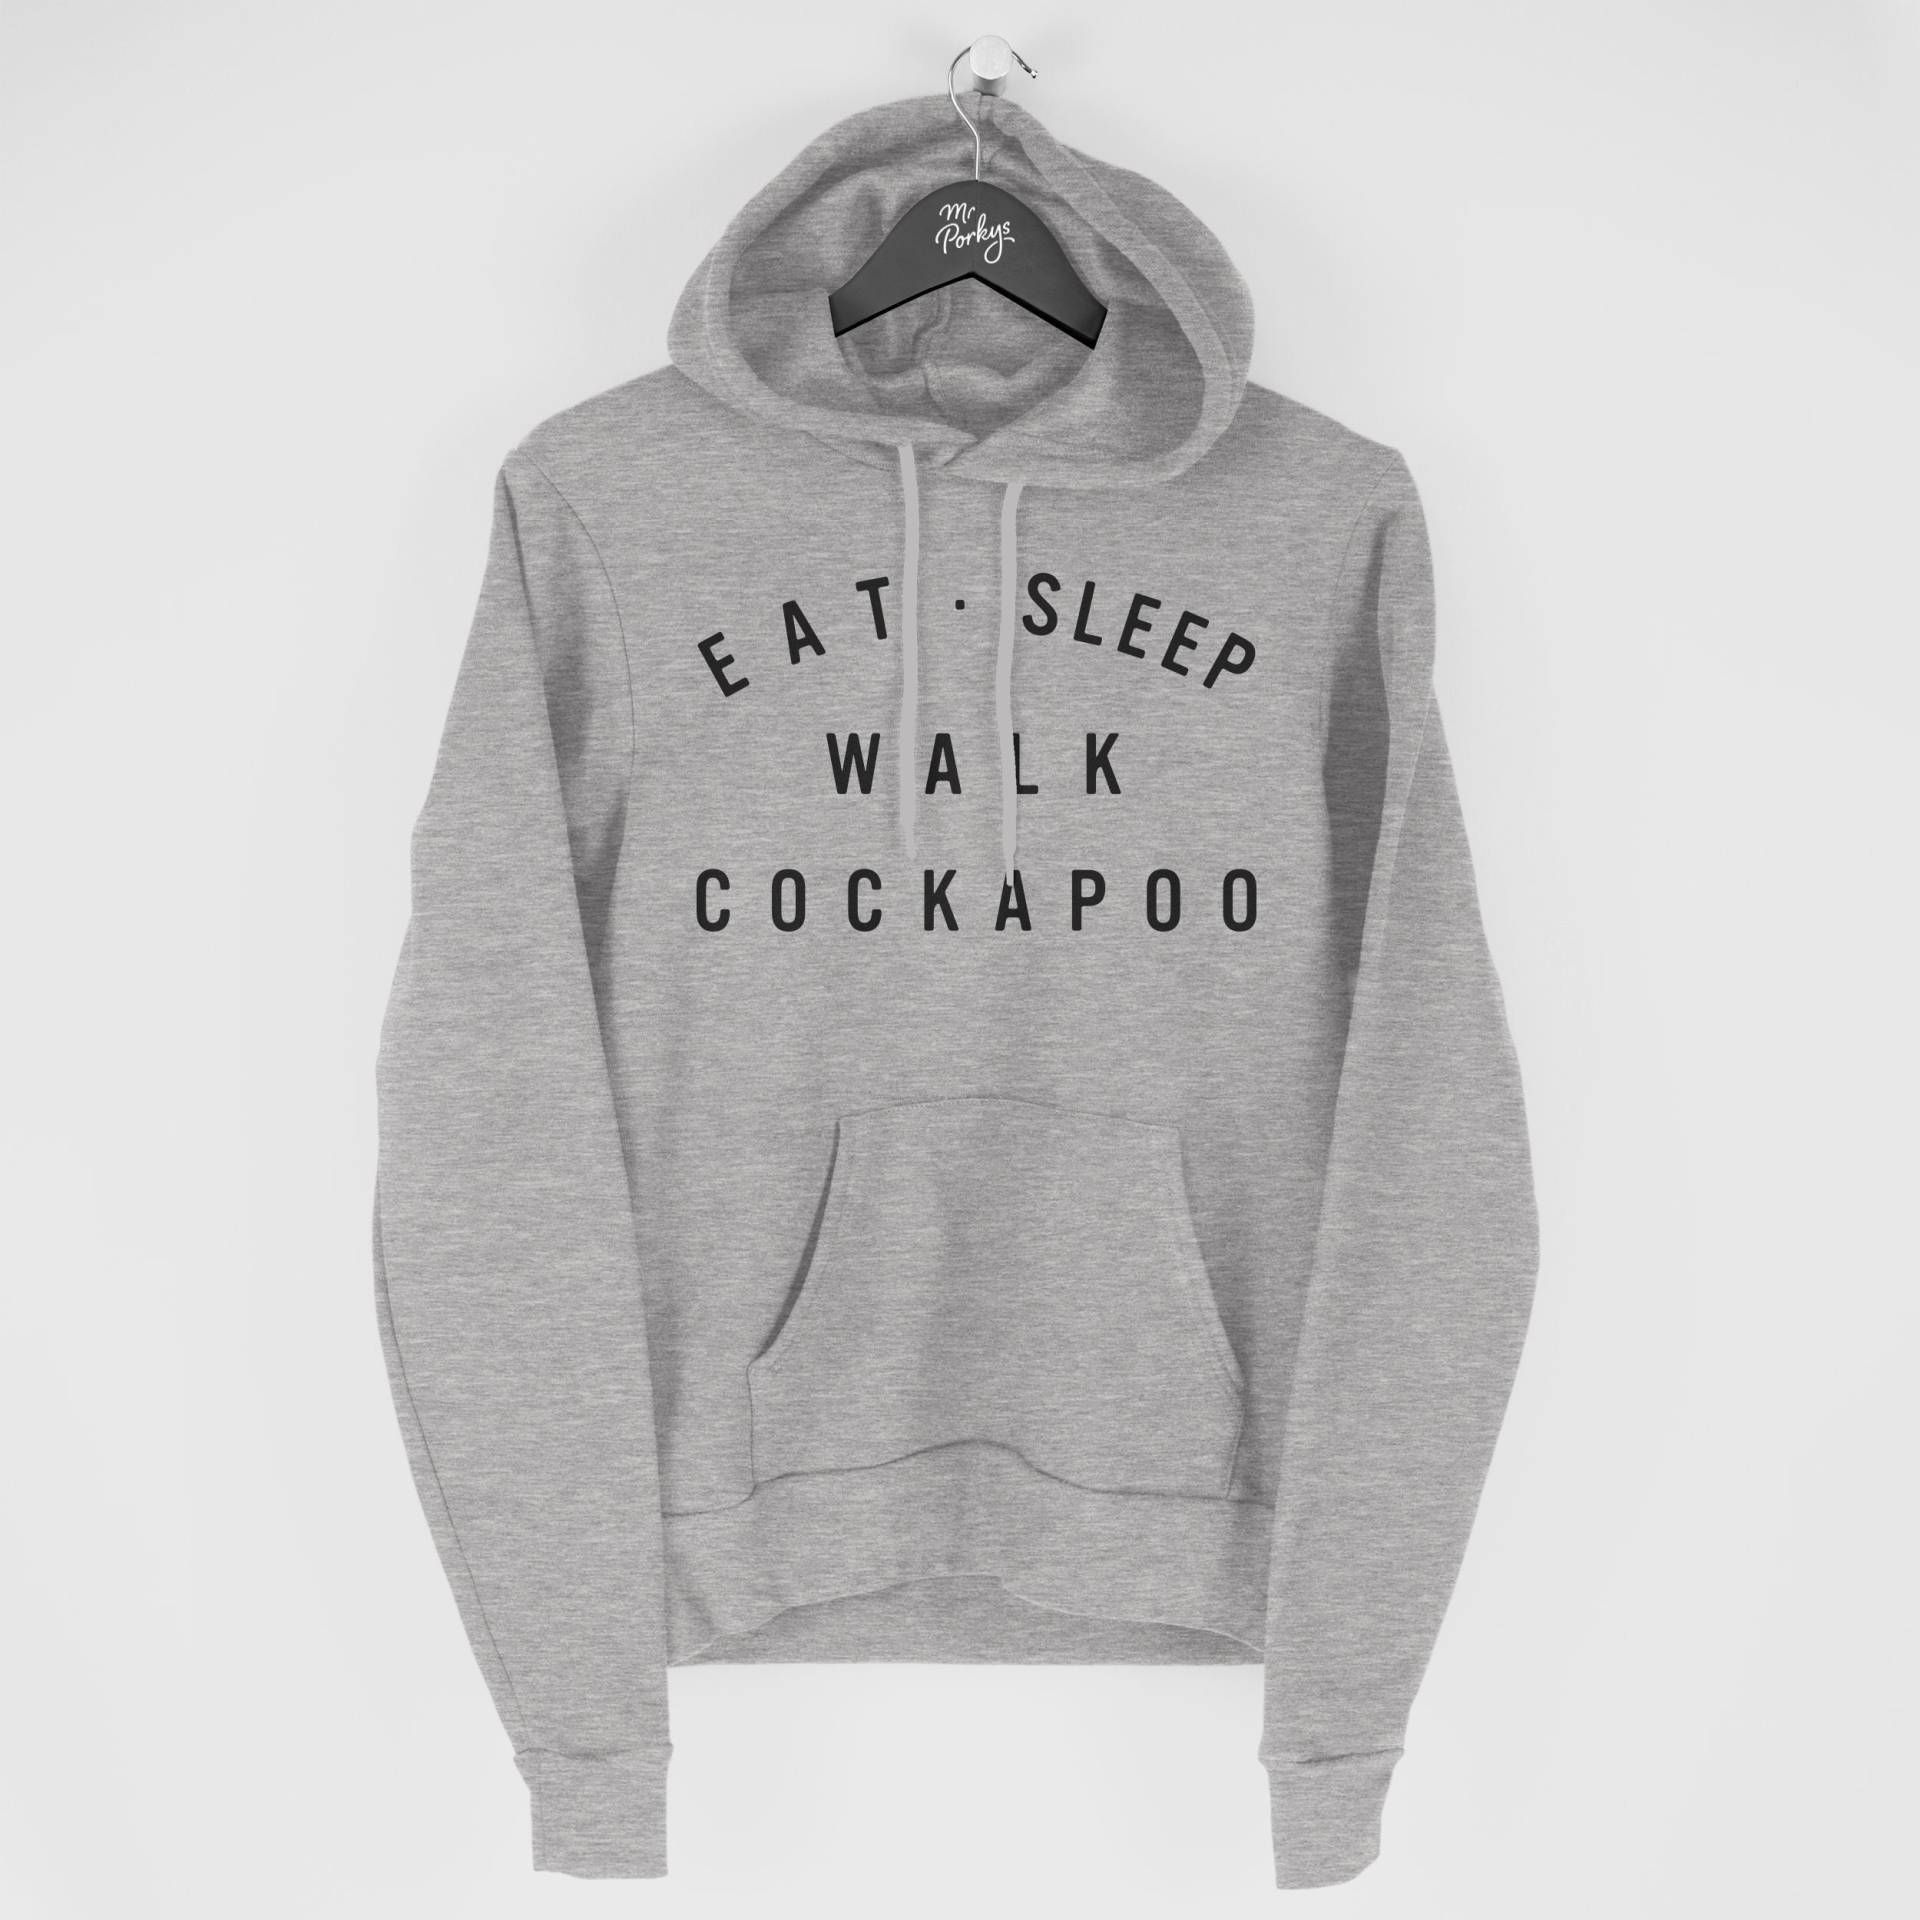 Cockapoo Hoodie, Eat Sleep Walk Geschenk Für Besitzer, Hoody von MrPorkysGiftShop